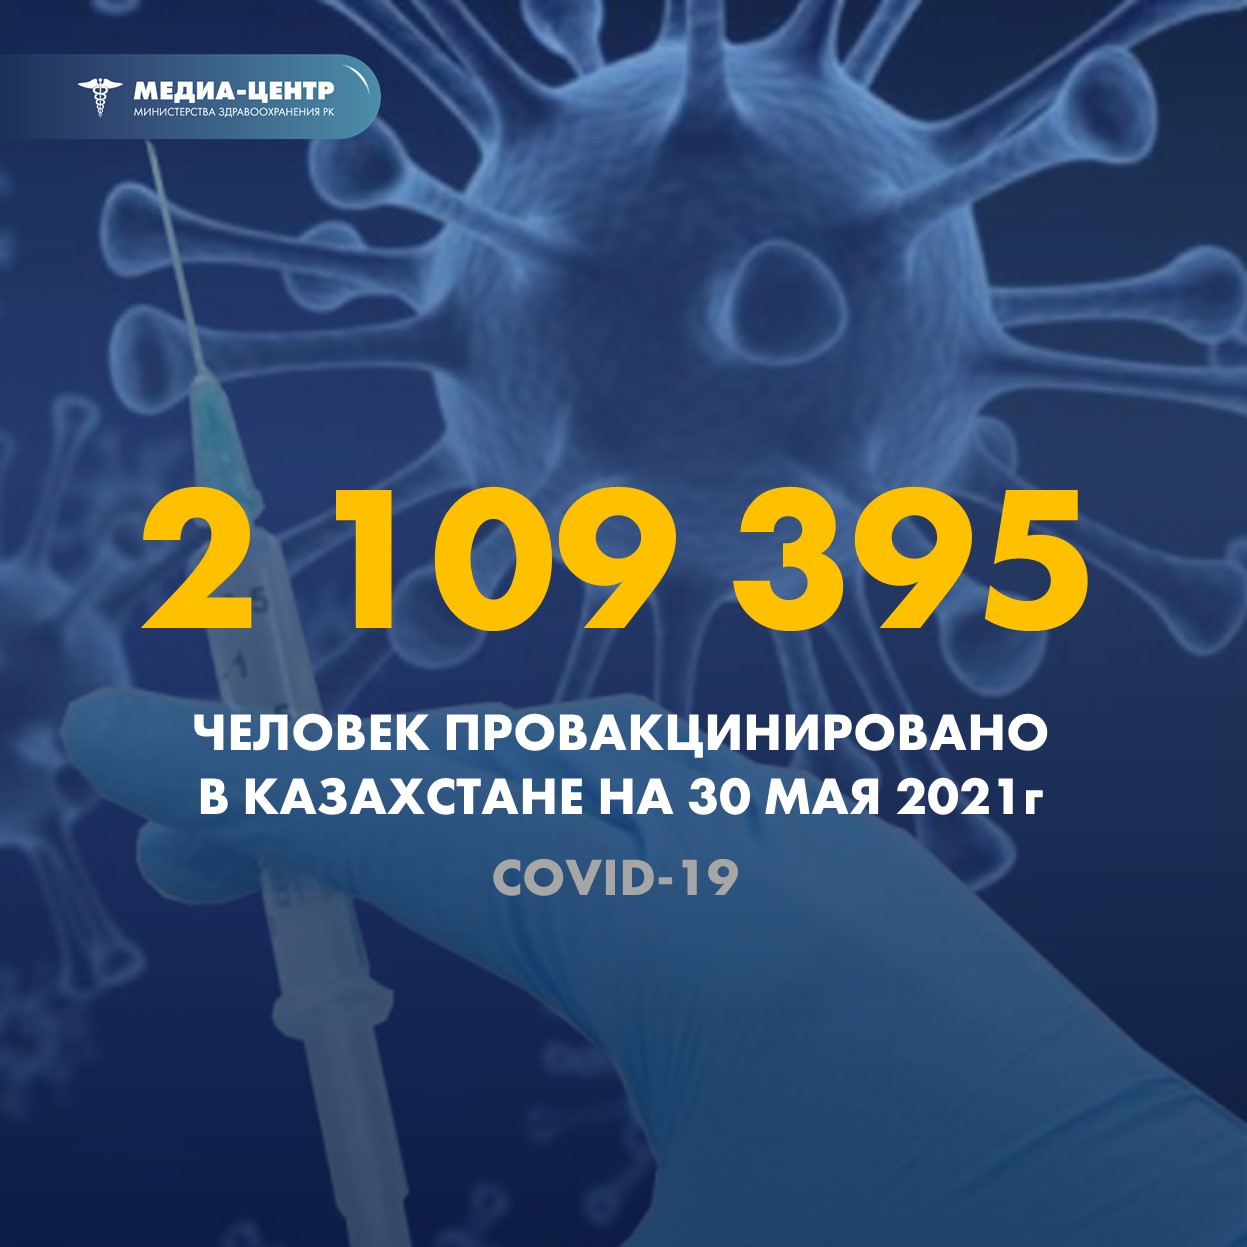 2 109 395 человек провакцинировано в Казахстане на 30 мая 2021 г